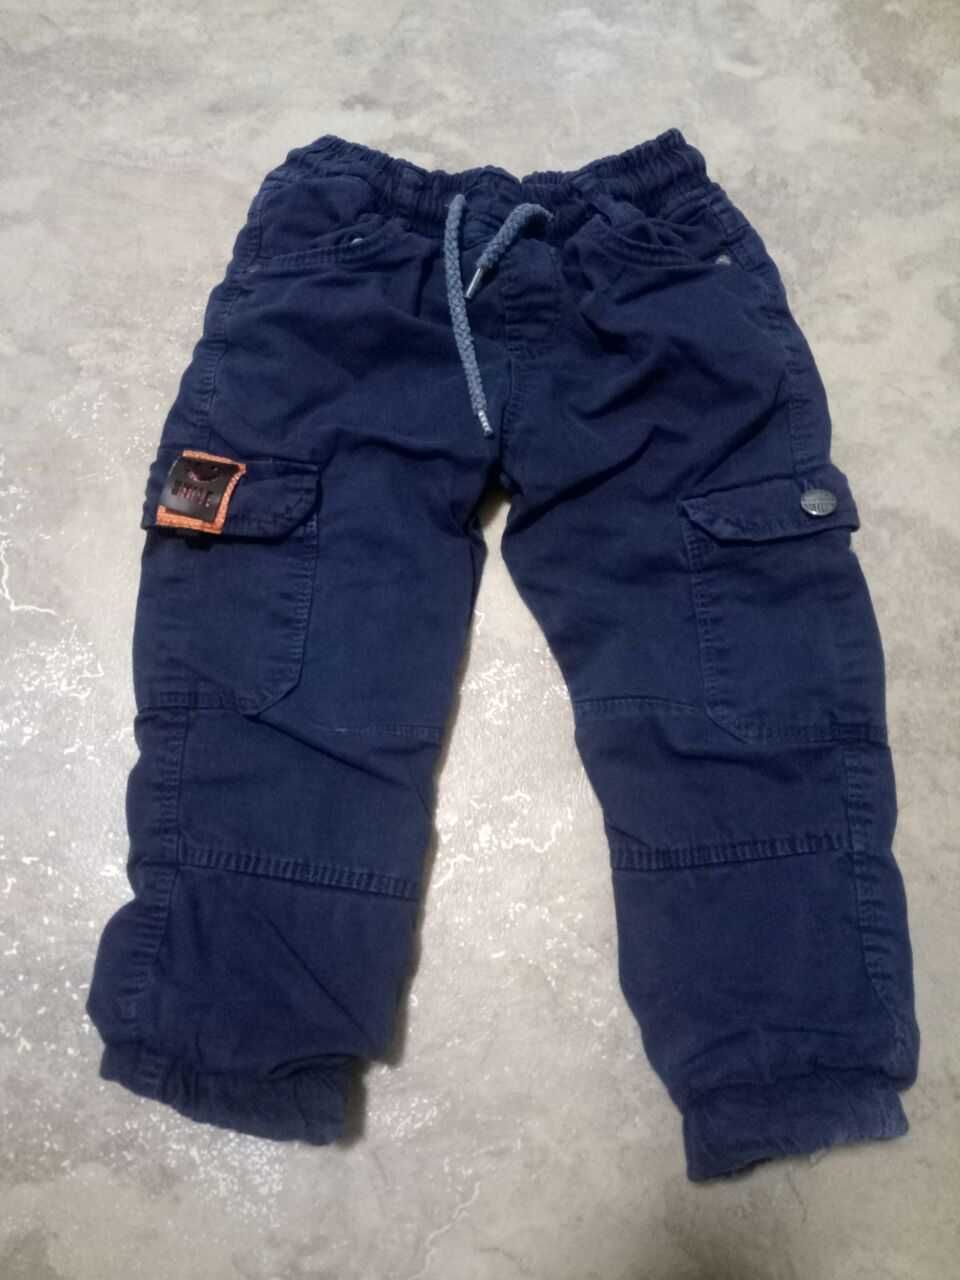 Джинсы штаны на весну/осень с травкой для мальчика 98-104р